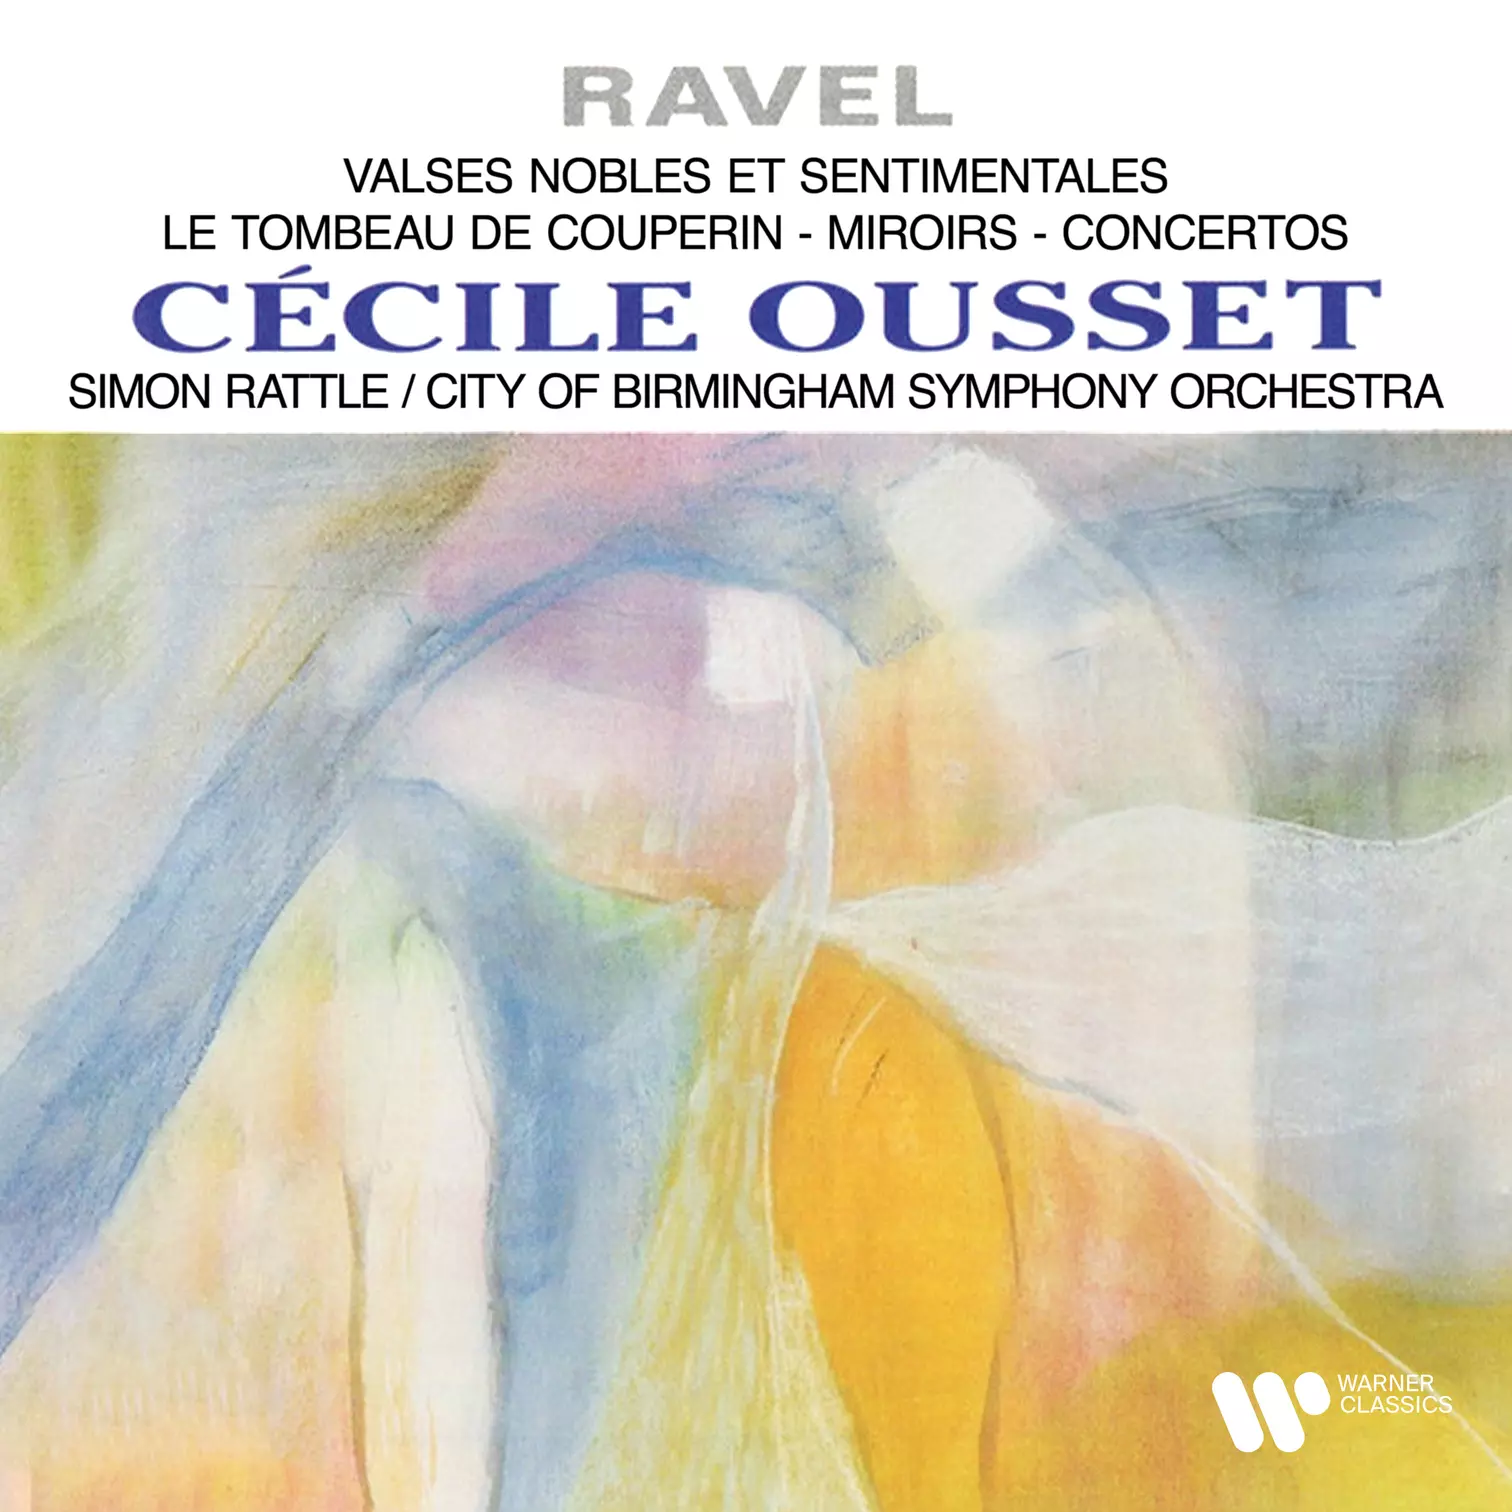 Ravel: Valses nobles et sentimentales, Le tombeau de Couperin, Miroirs & Concertos